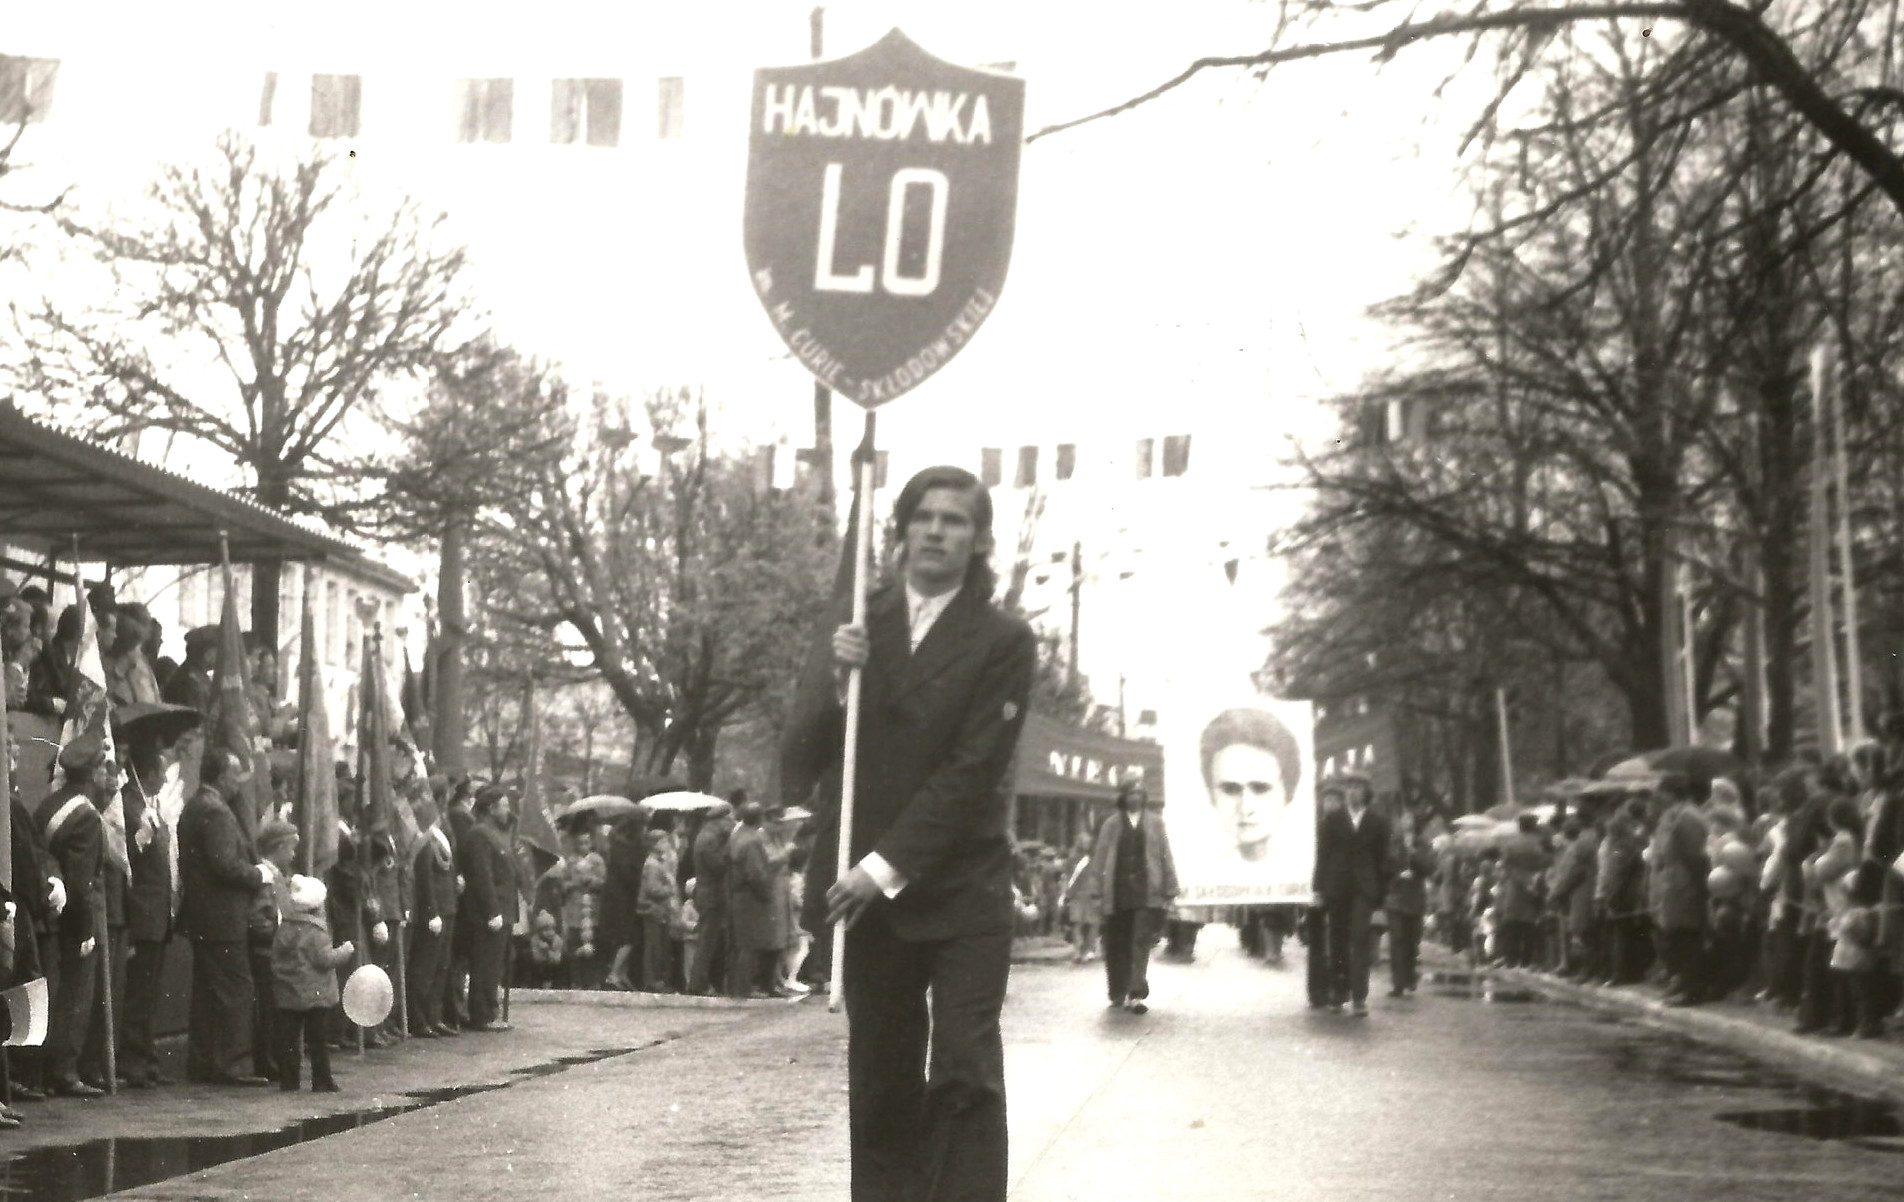 Idu „na czele pochodu”; Hajnuvka, 1 maja 1977